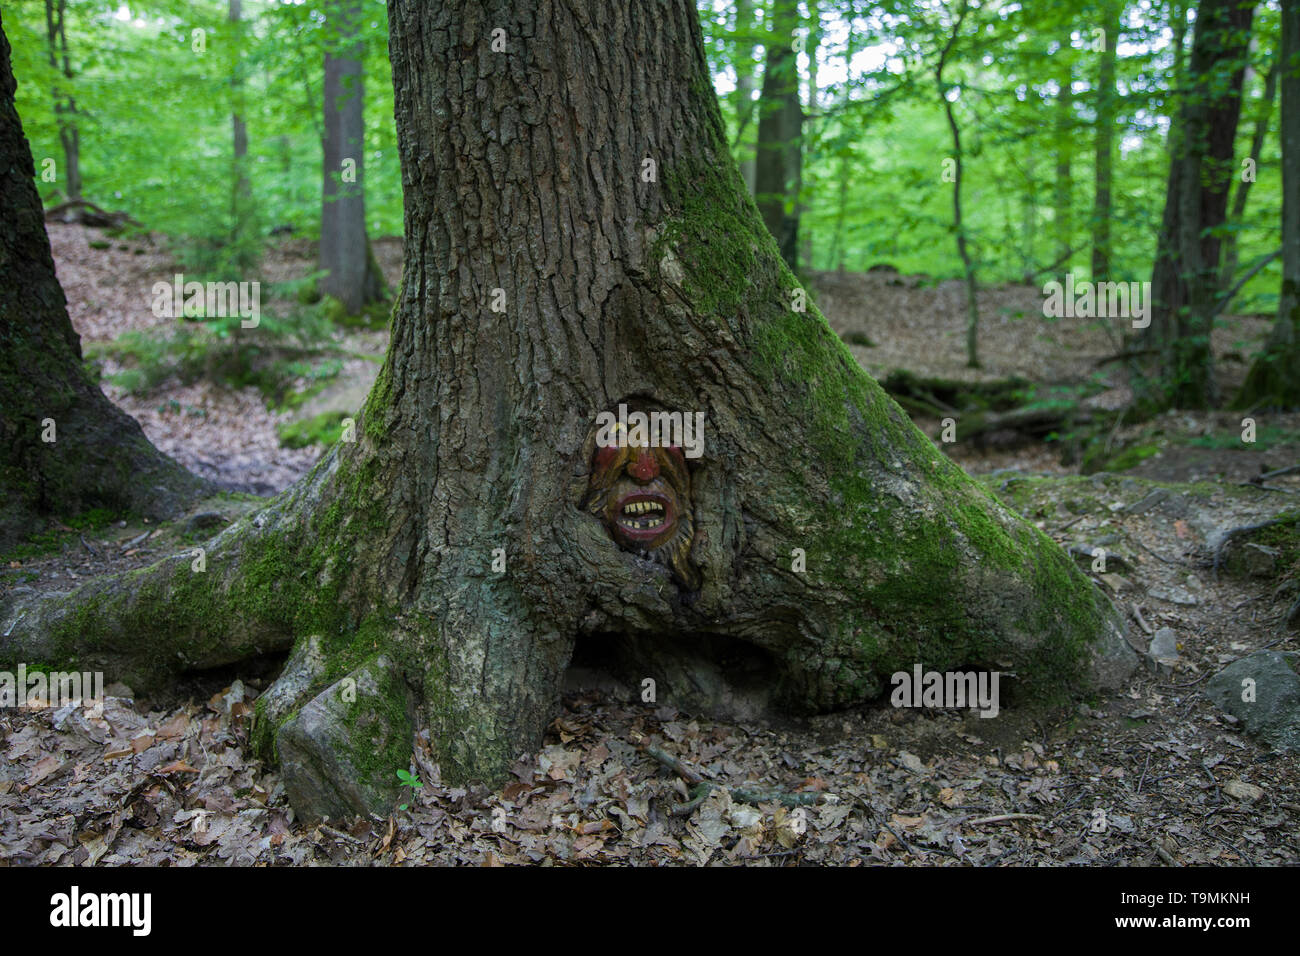 Volto scolpito in un tronco di albero, Steckeschlääfer-Klamm, Binger foresta, Bingen sul Reno, Renania-Palatinato, Germania Foto Stock